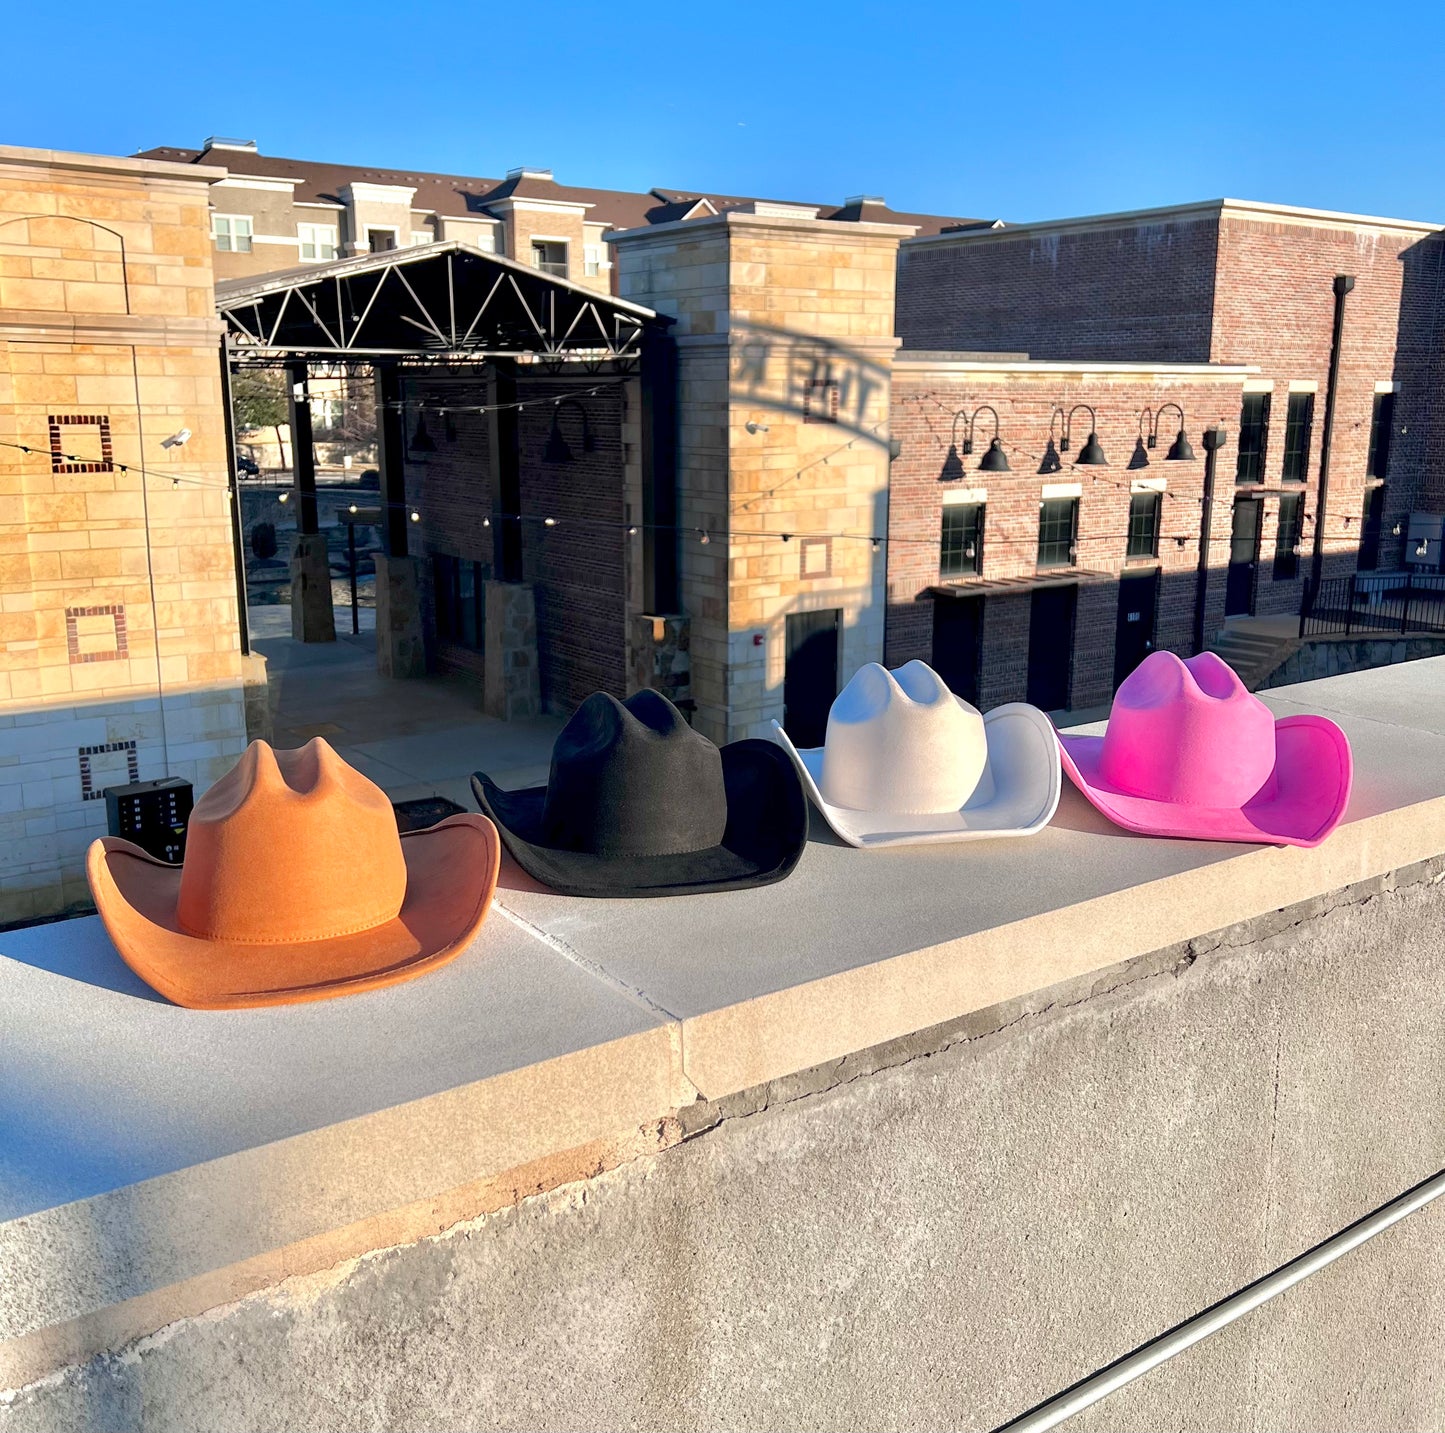 Nashville Suede Cowgirl Hat - Rust